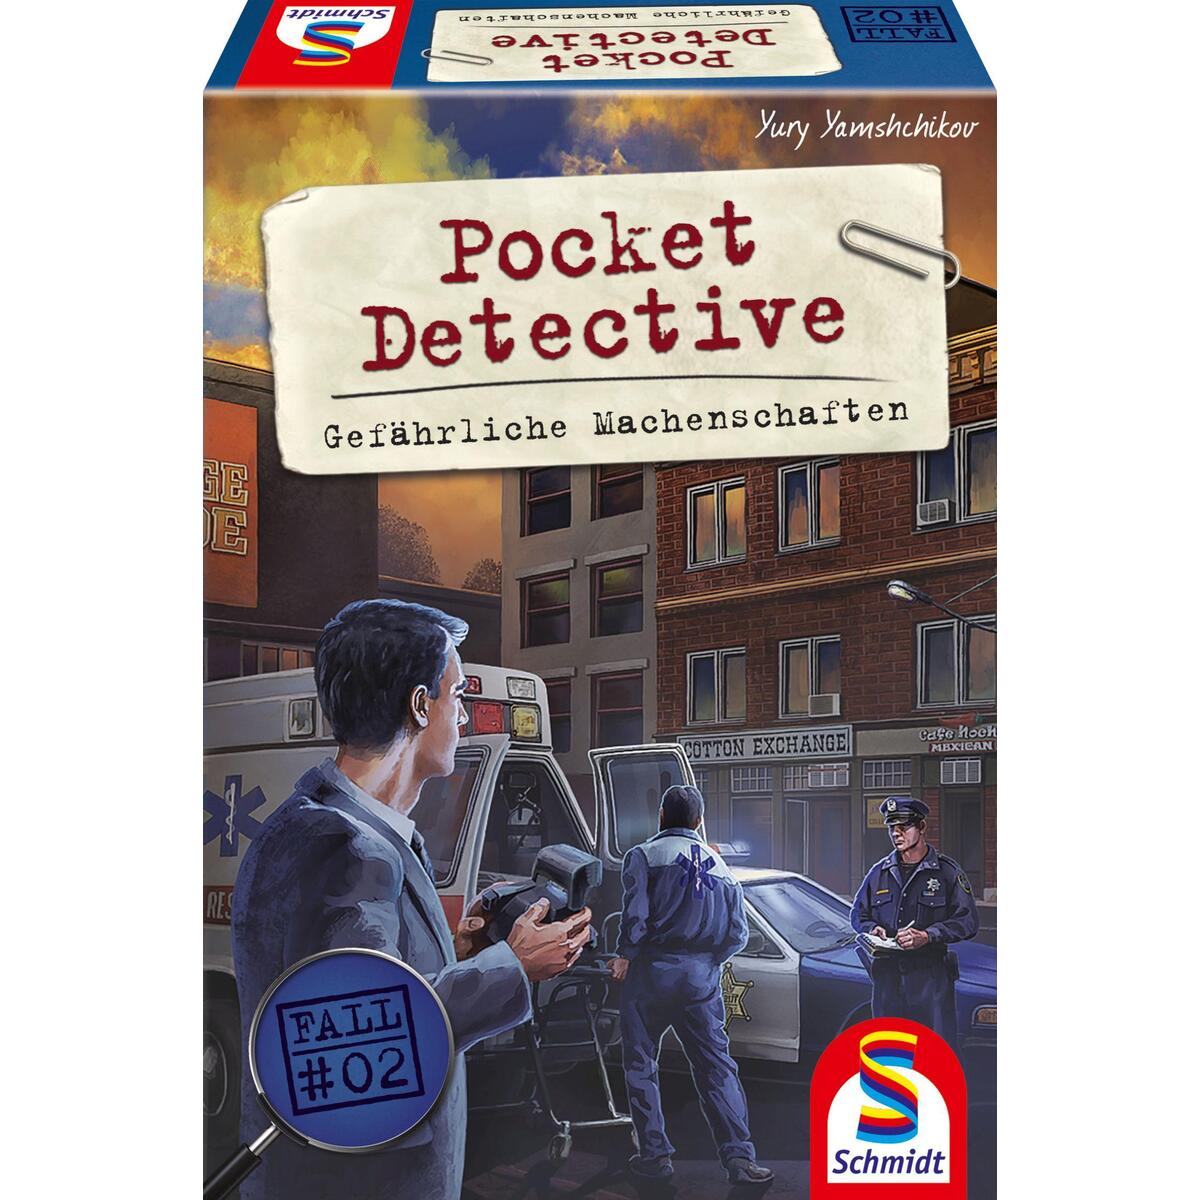 Pocket Detective, Gefährliche Machenschaften von Schmidt Spiele GmbH